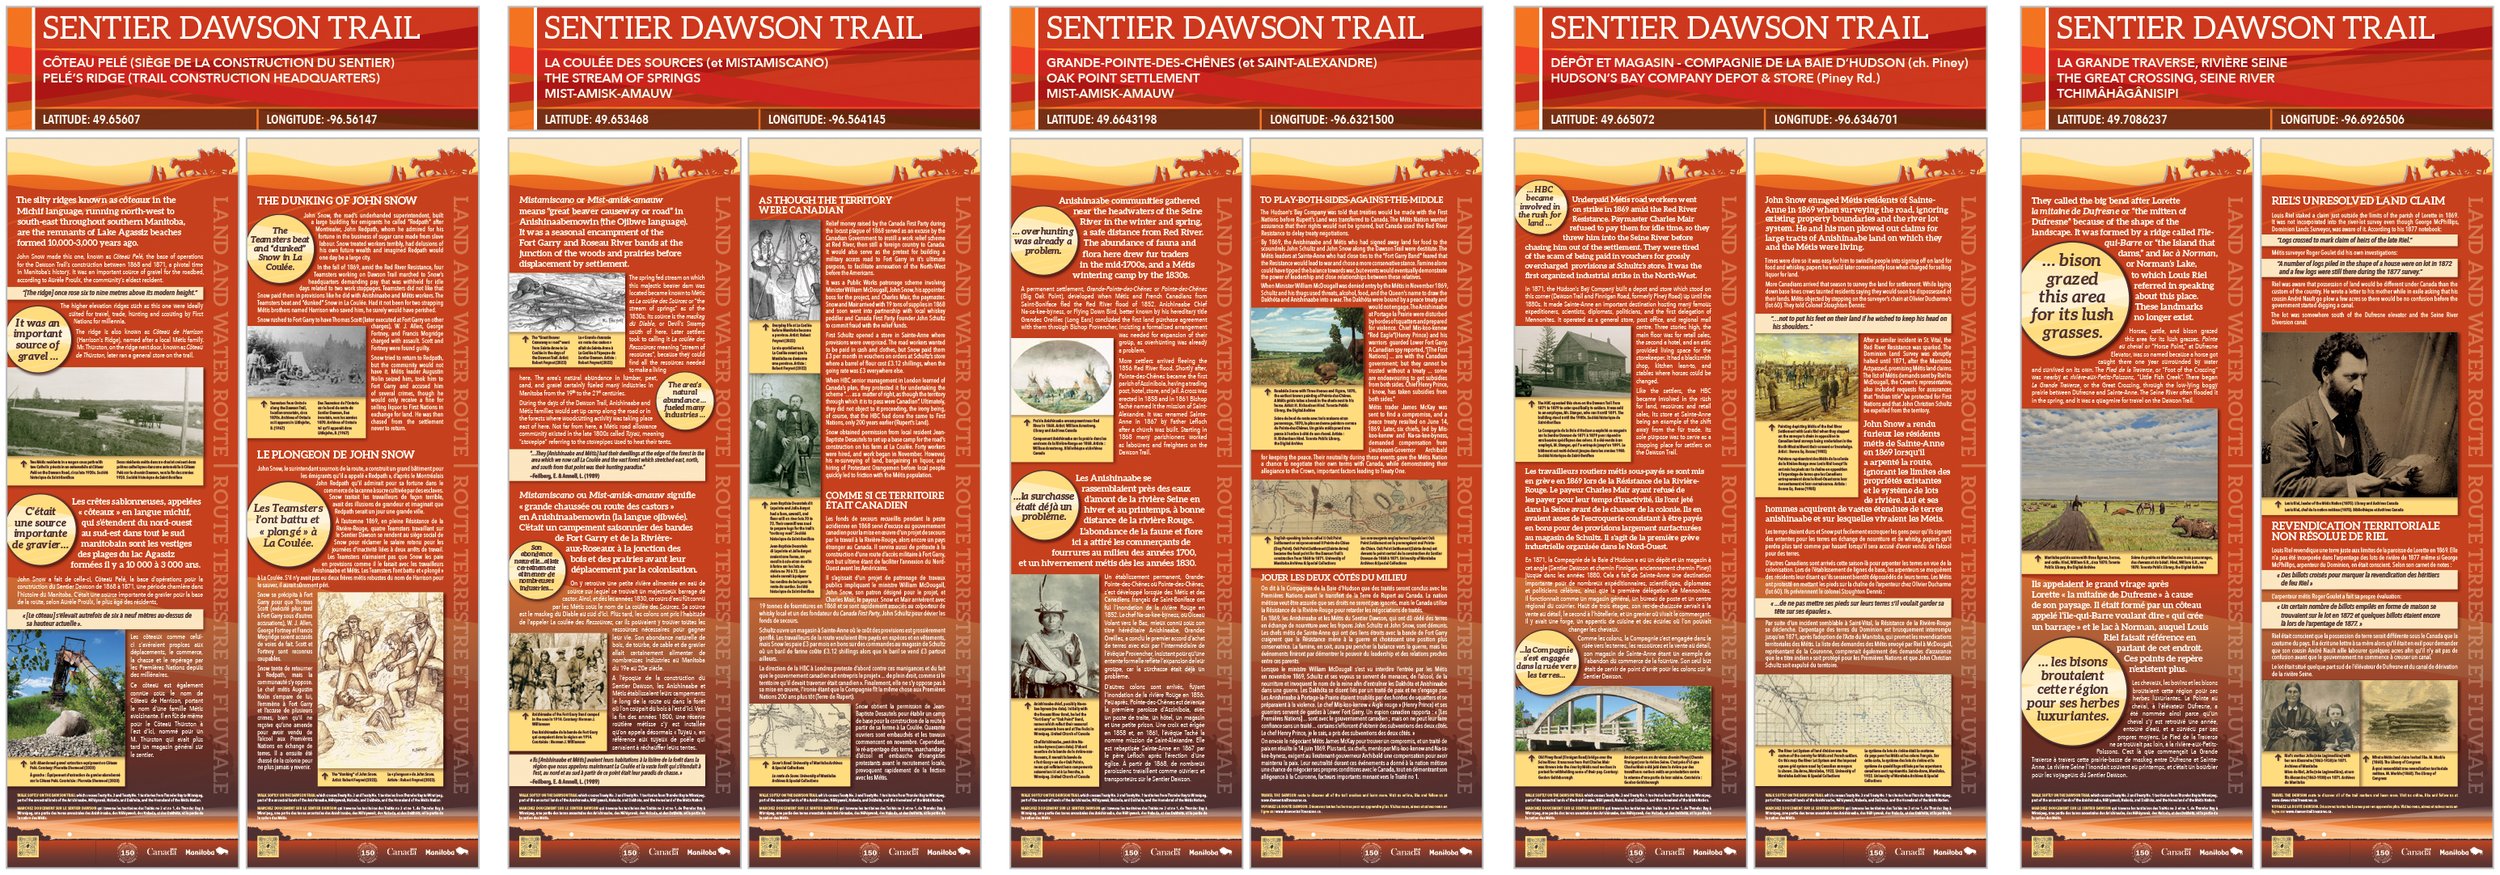 The Dawson Trail Commemorative Project